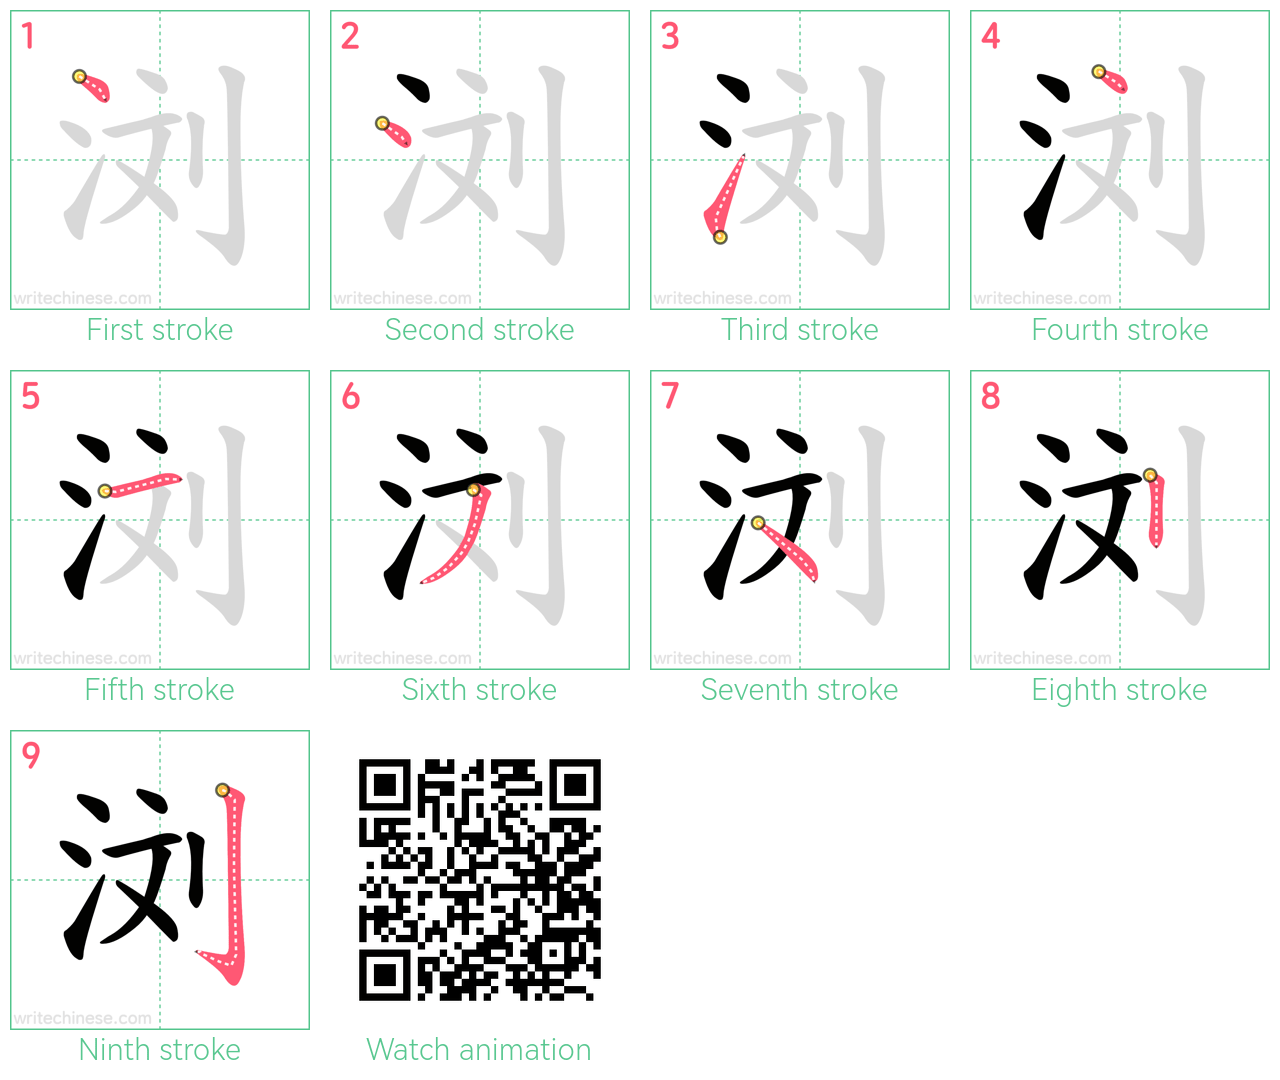 浏 step-by-step stroke order diagrams